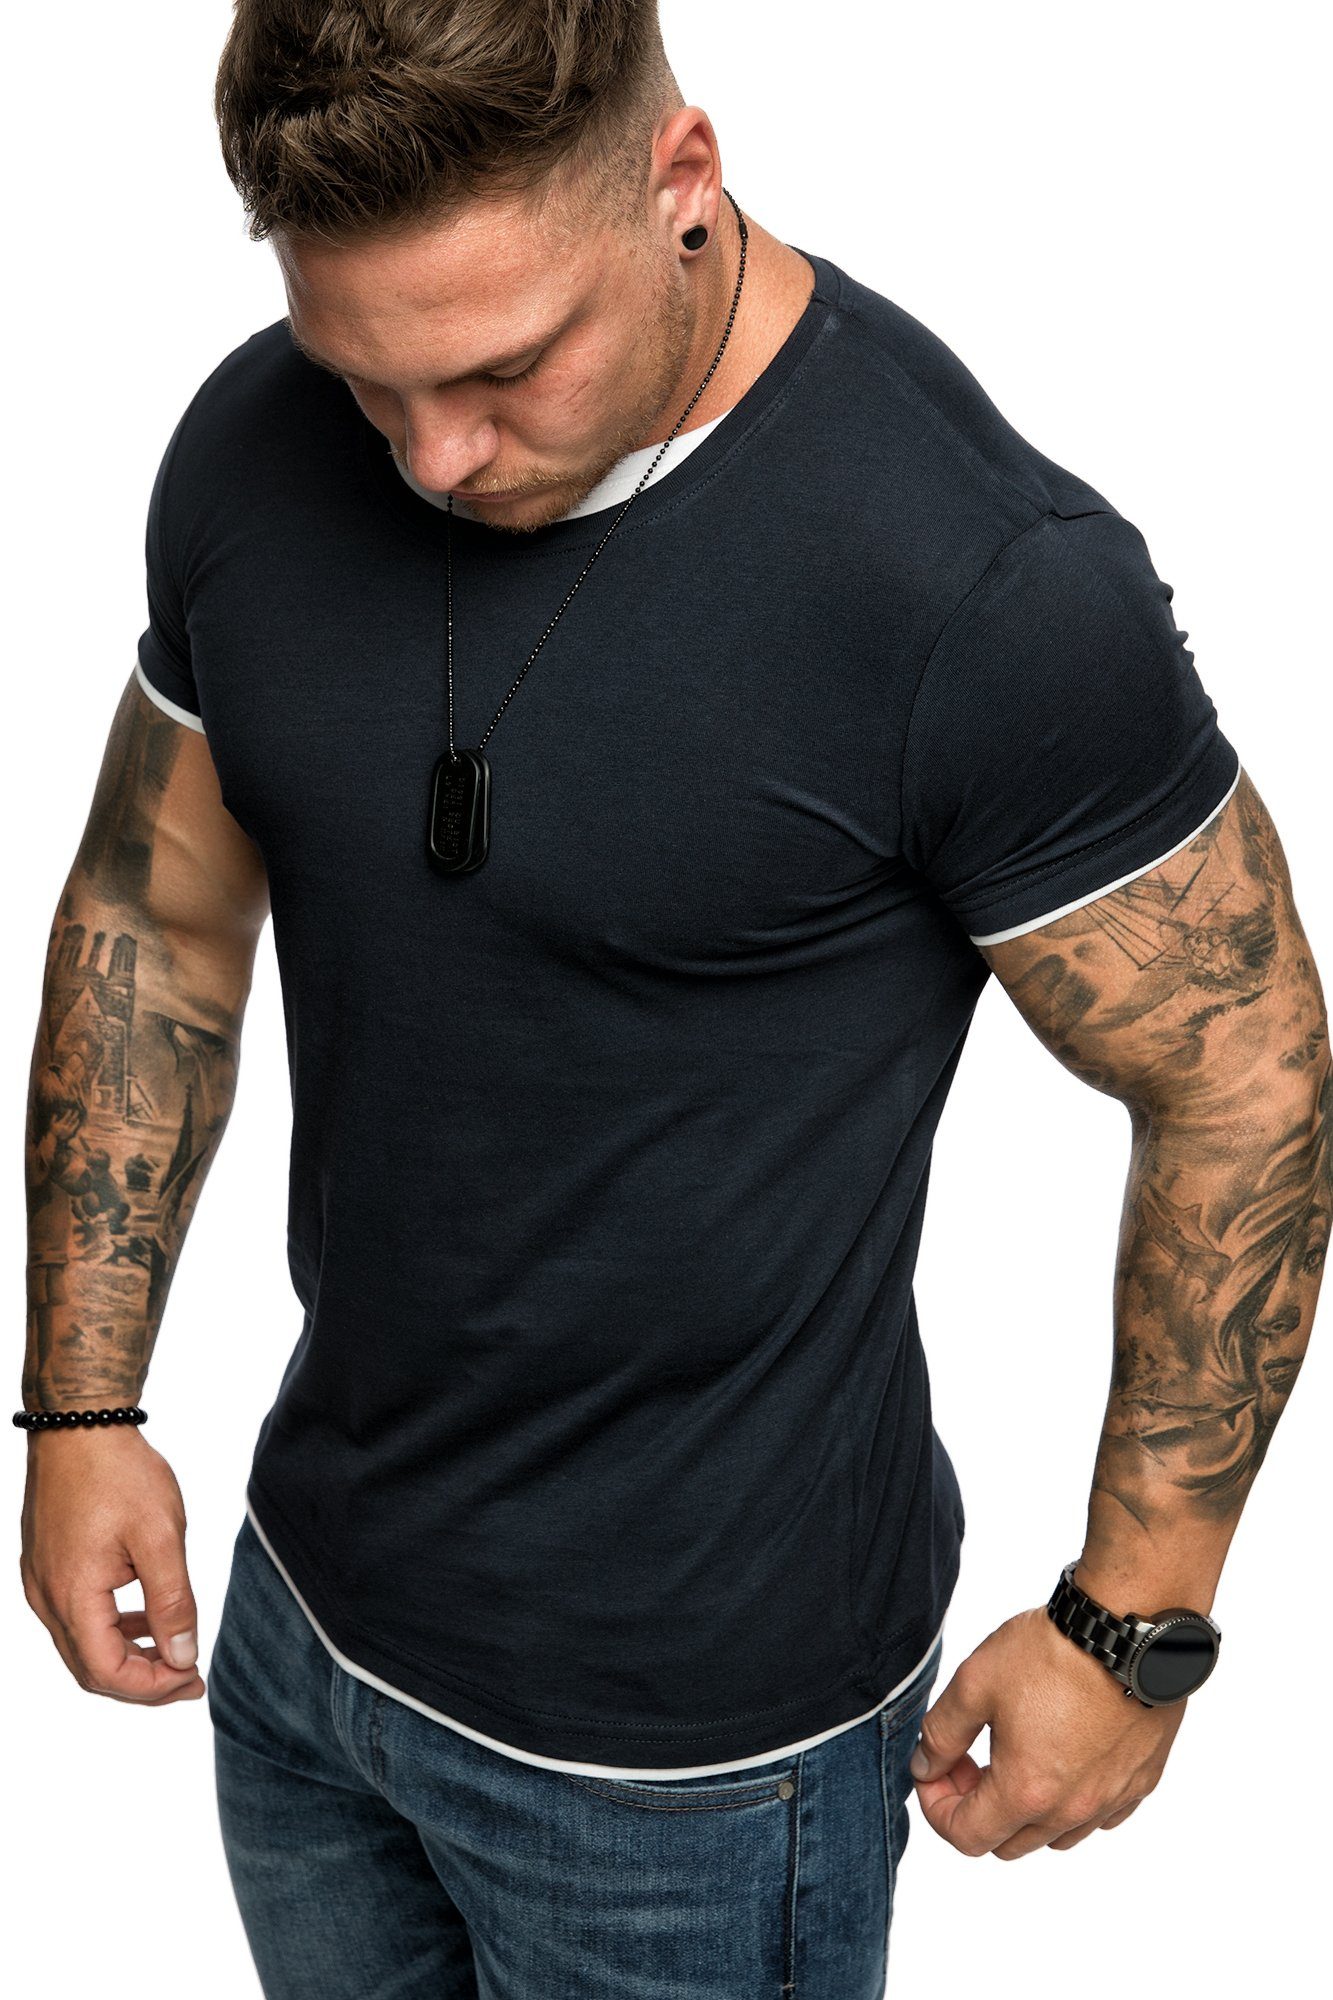 Amaci&Sons T-Shirt LAKEWOOD Herren Slim-Fit Basic Shirt Doppel Farbig mit Rundhalsausschnitt Navyblau/Weiß